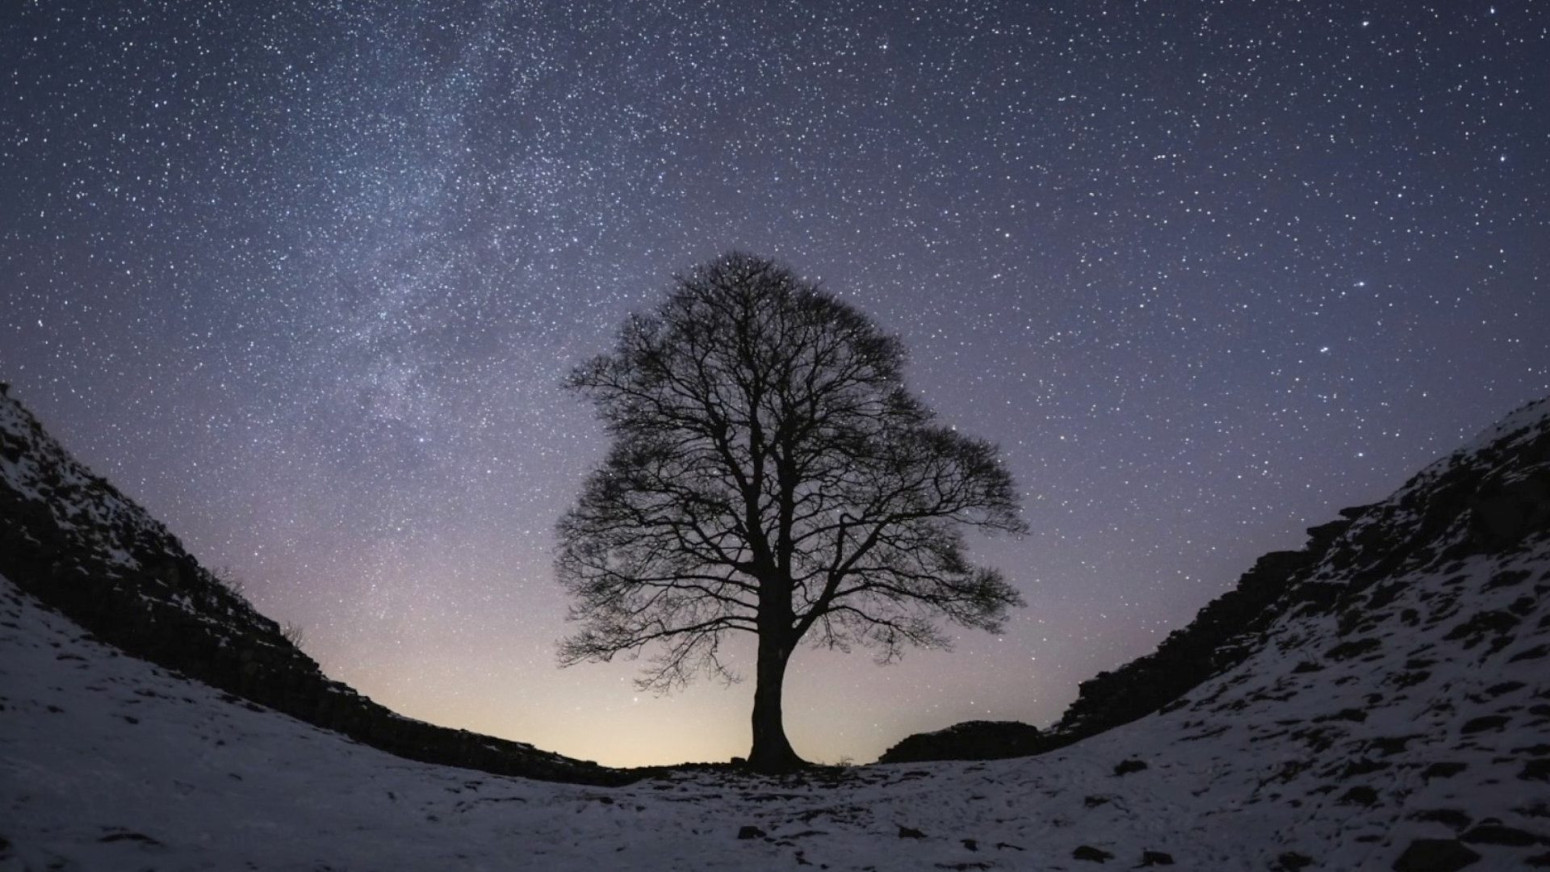 Čuveno drvo Robina Huda namerno posečeno u severnom delu Velike Britanije